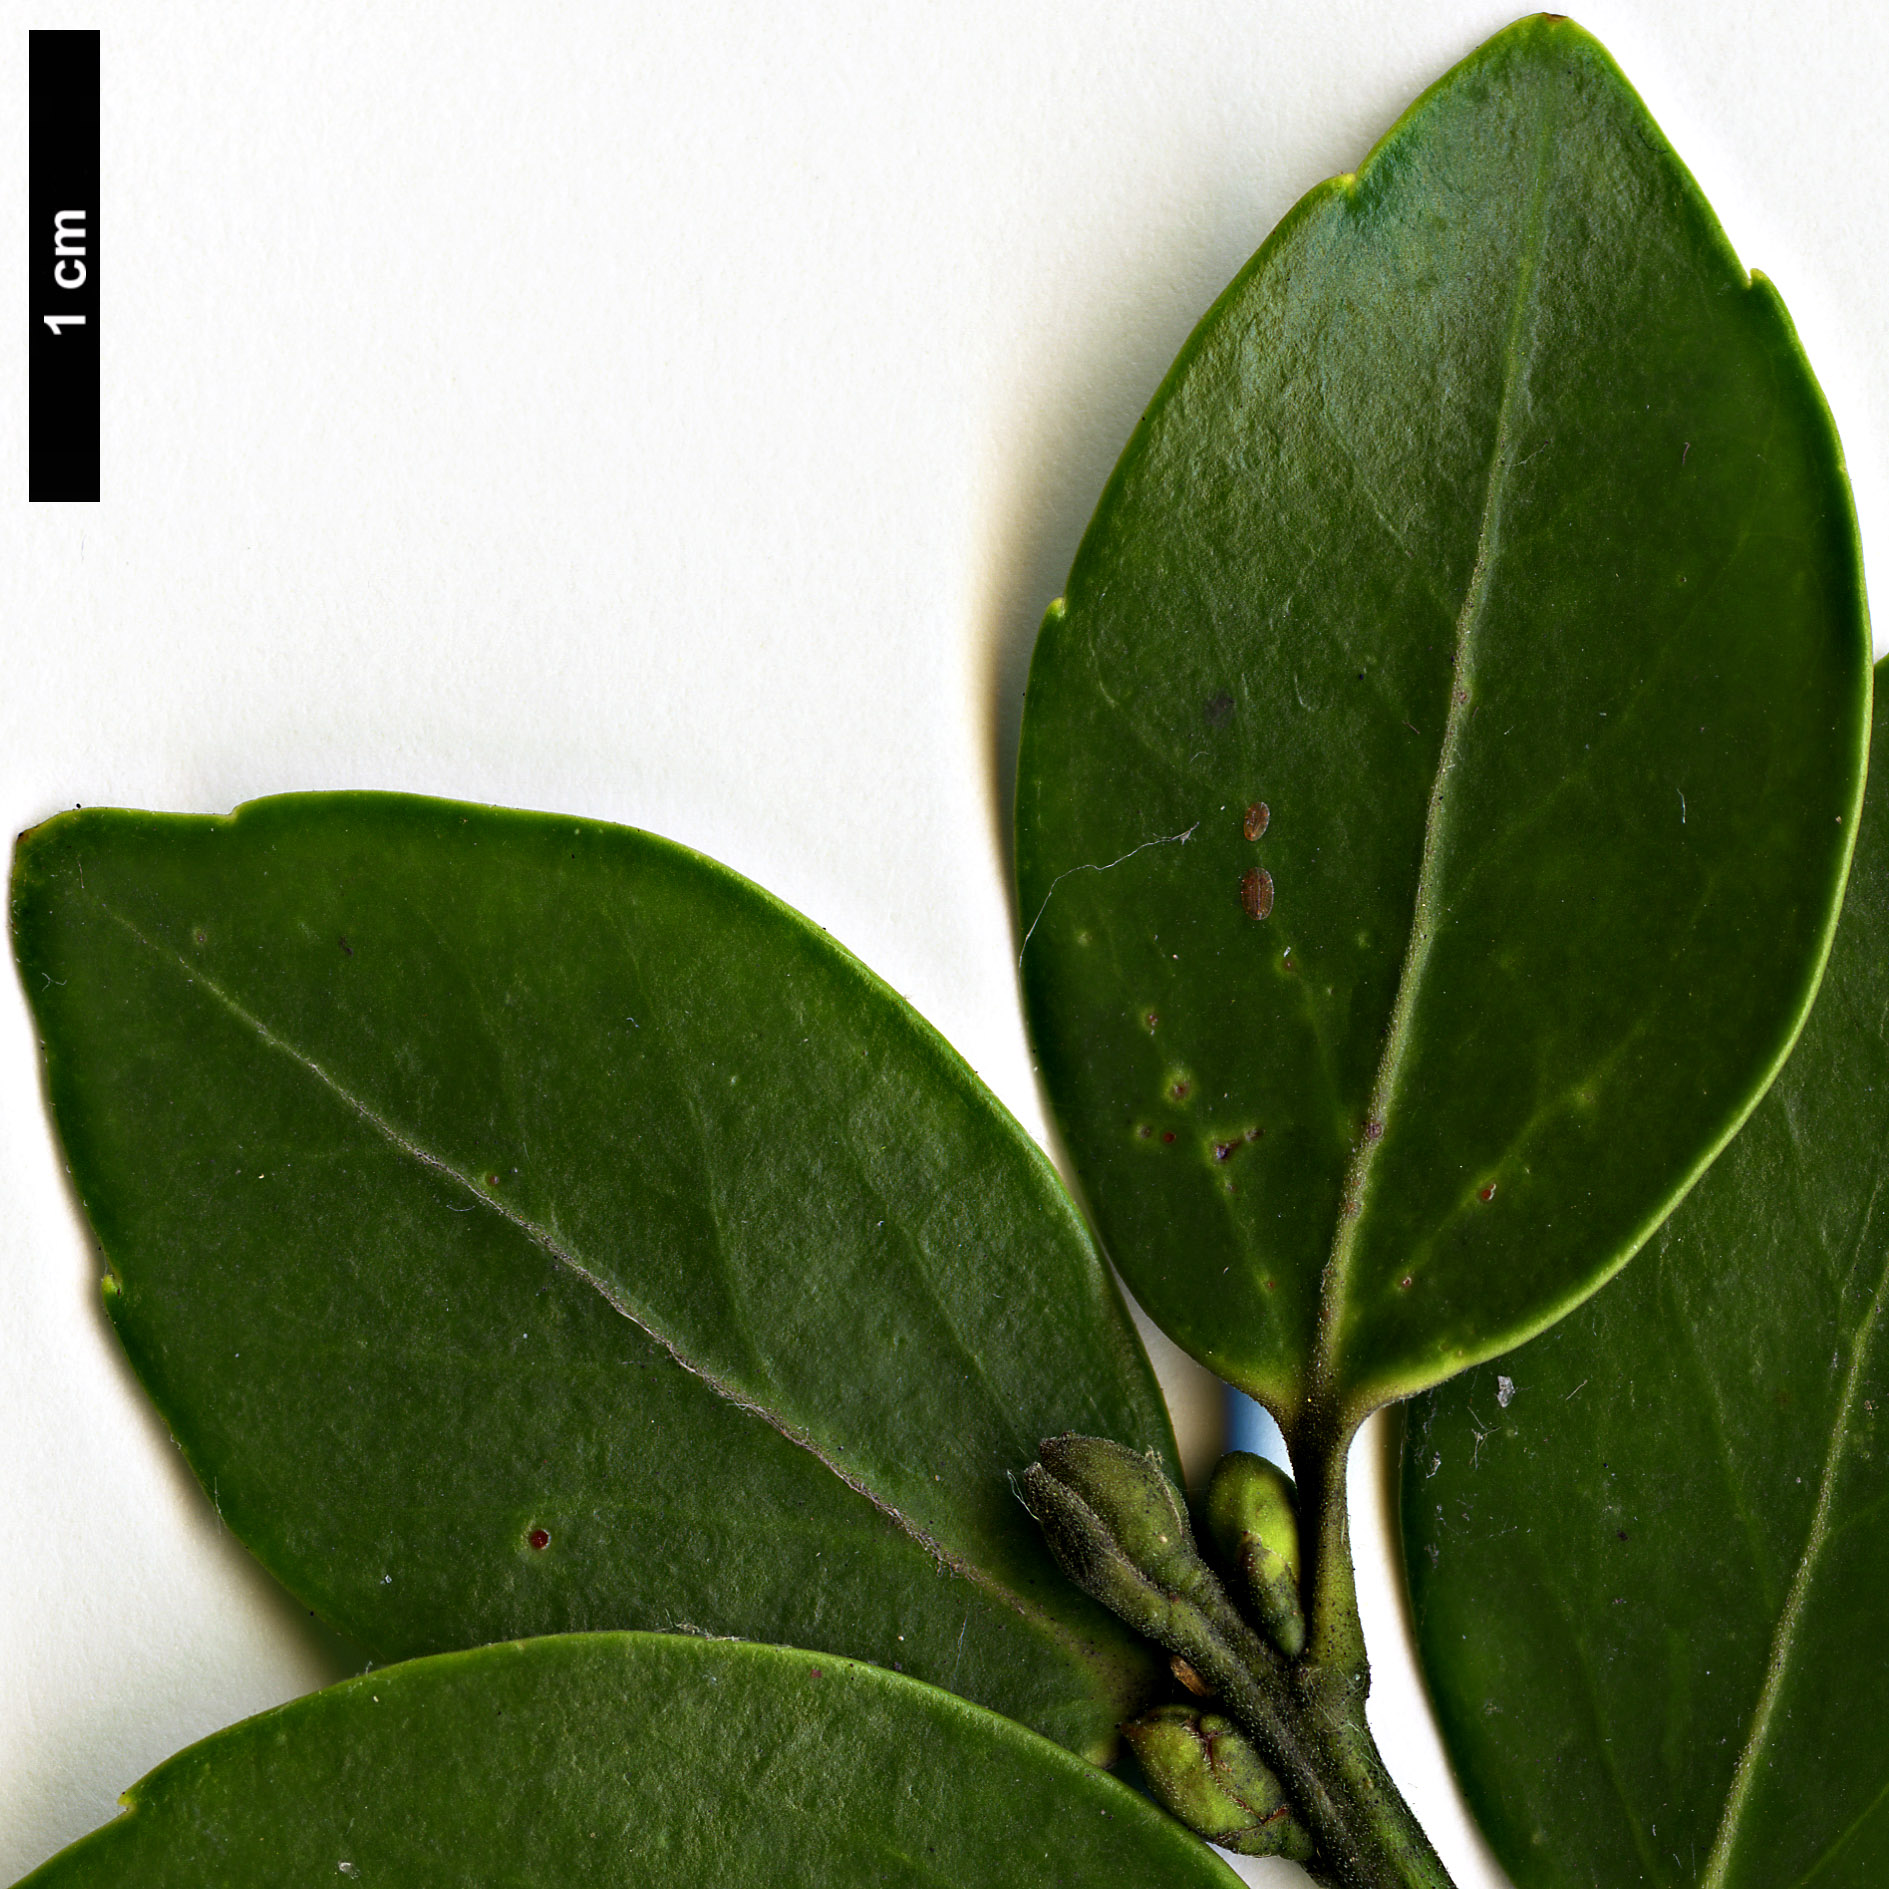 High resolution image: Family: Aquifoliaceae - Genus: Ilex - Taxon: sugerokii